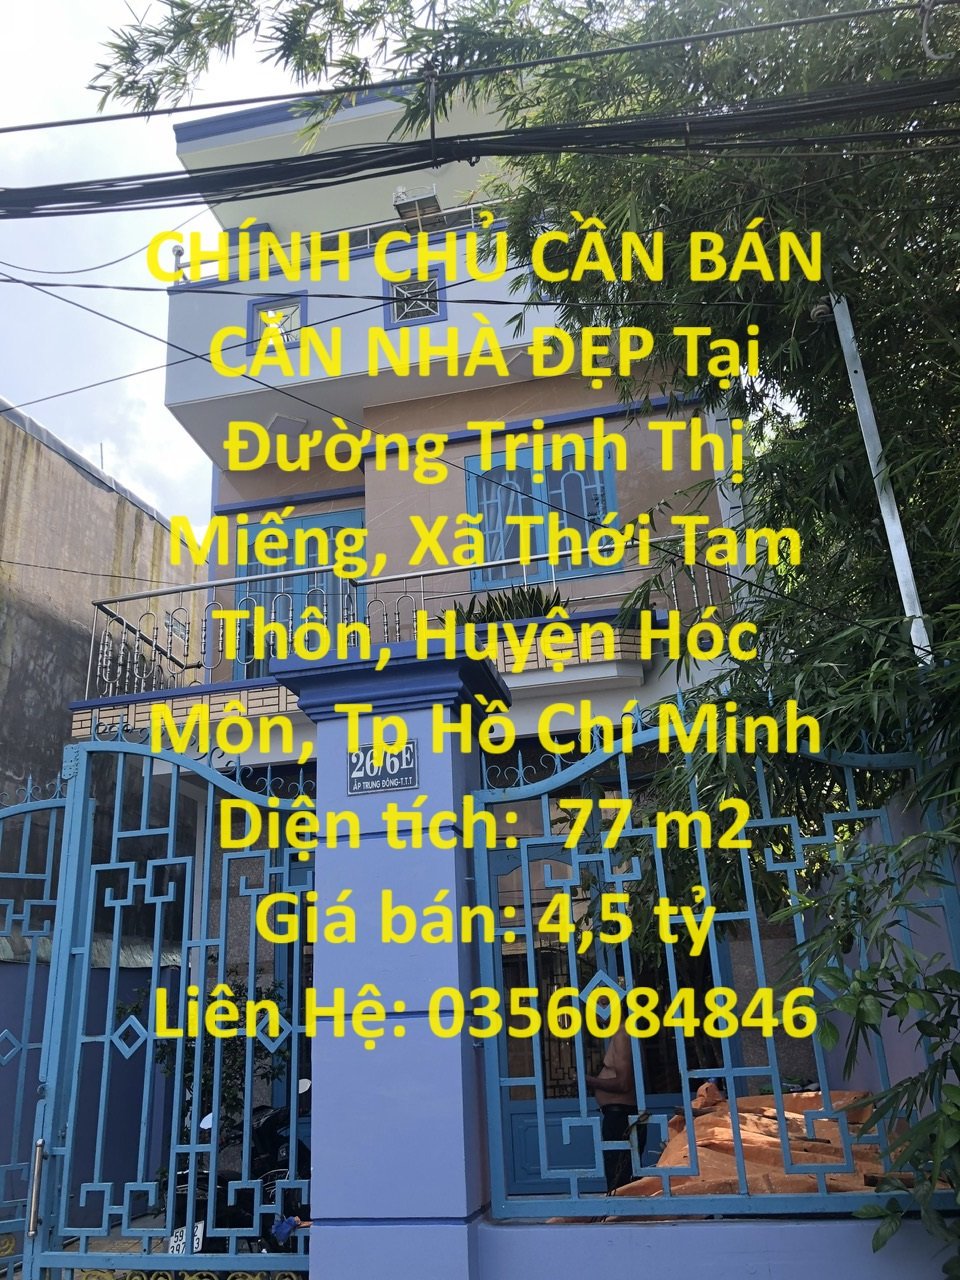 CHÍNH CHỦ CẦN BÁN CĂN NHÀ ĐẸP Tại Huyện Hóc Môn - HCM - Giá Đầu Tư